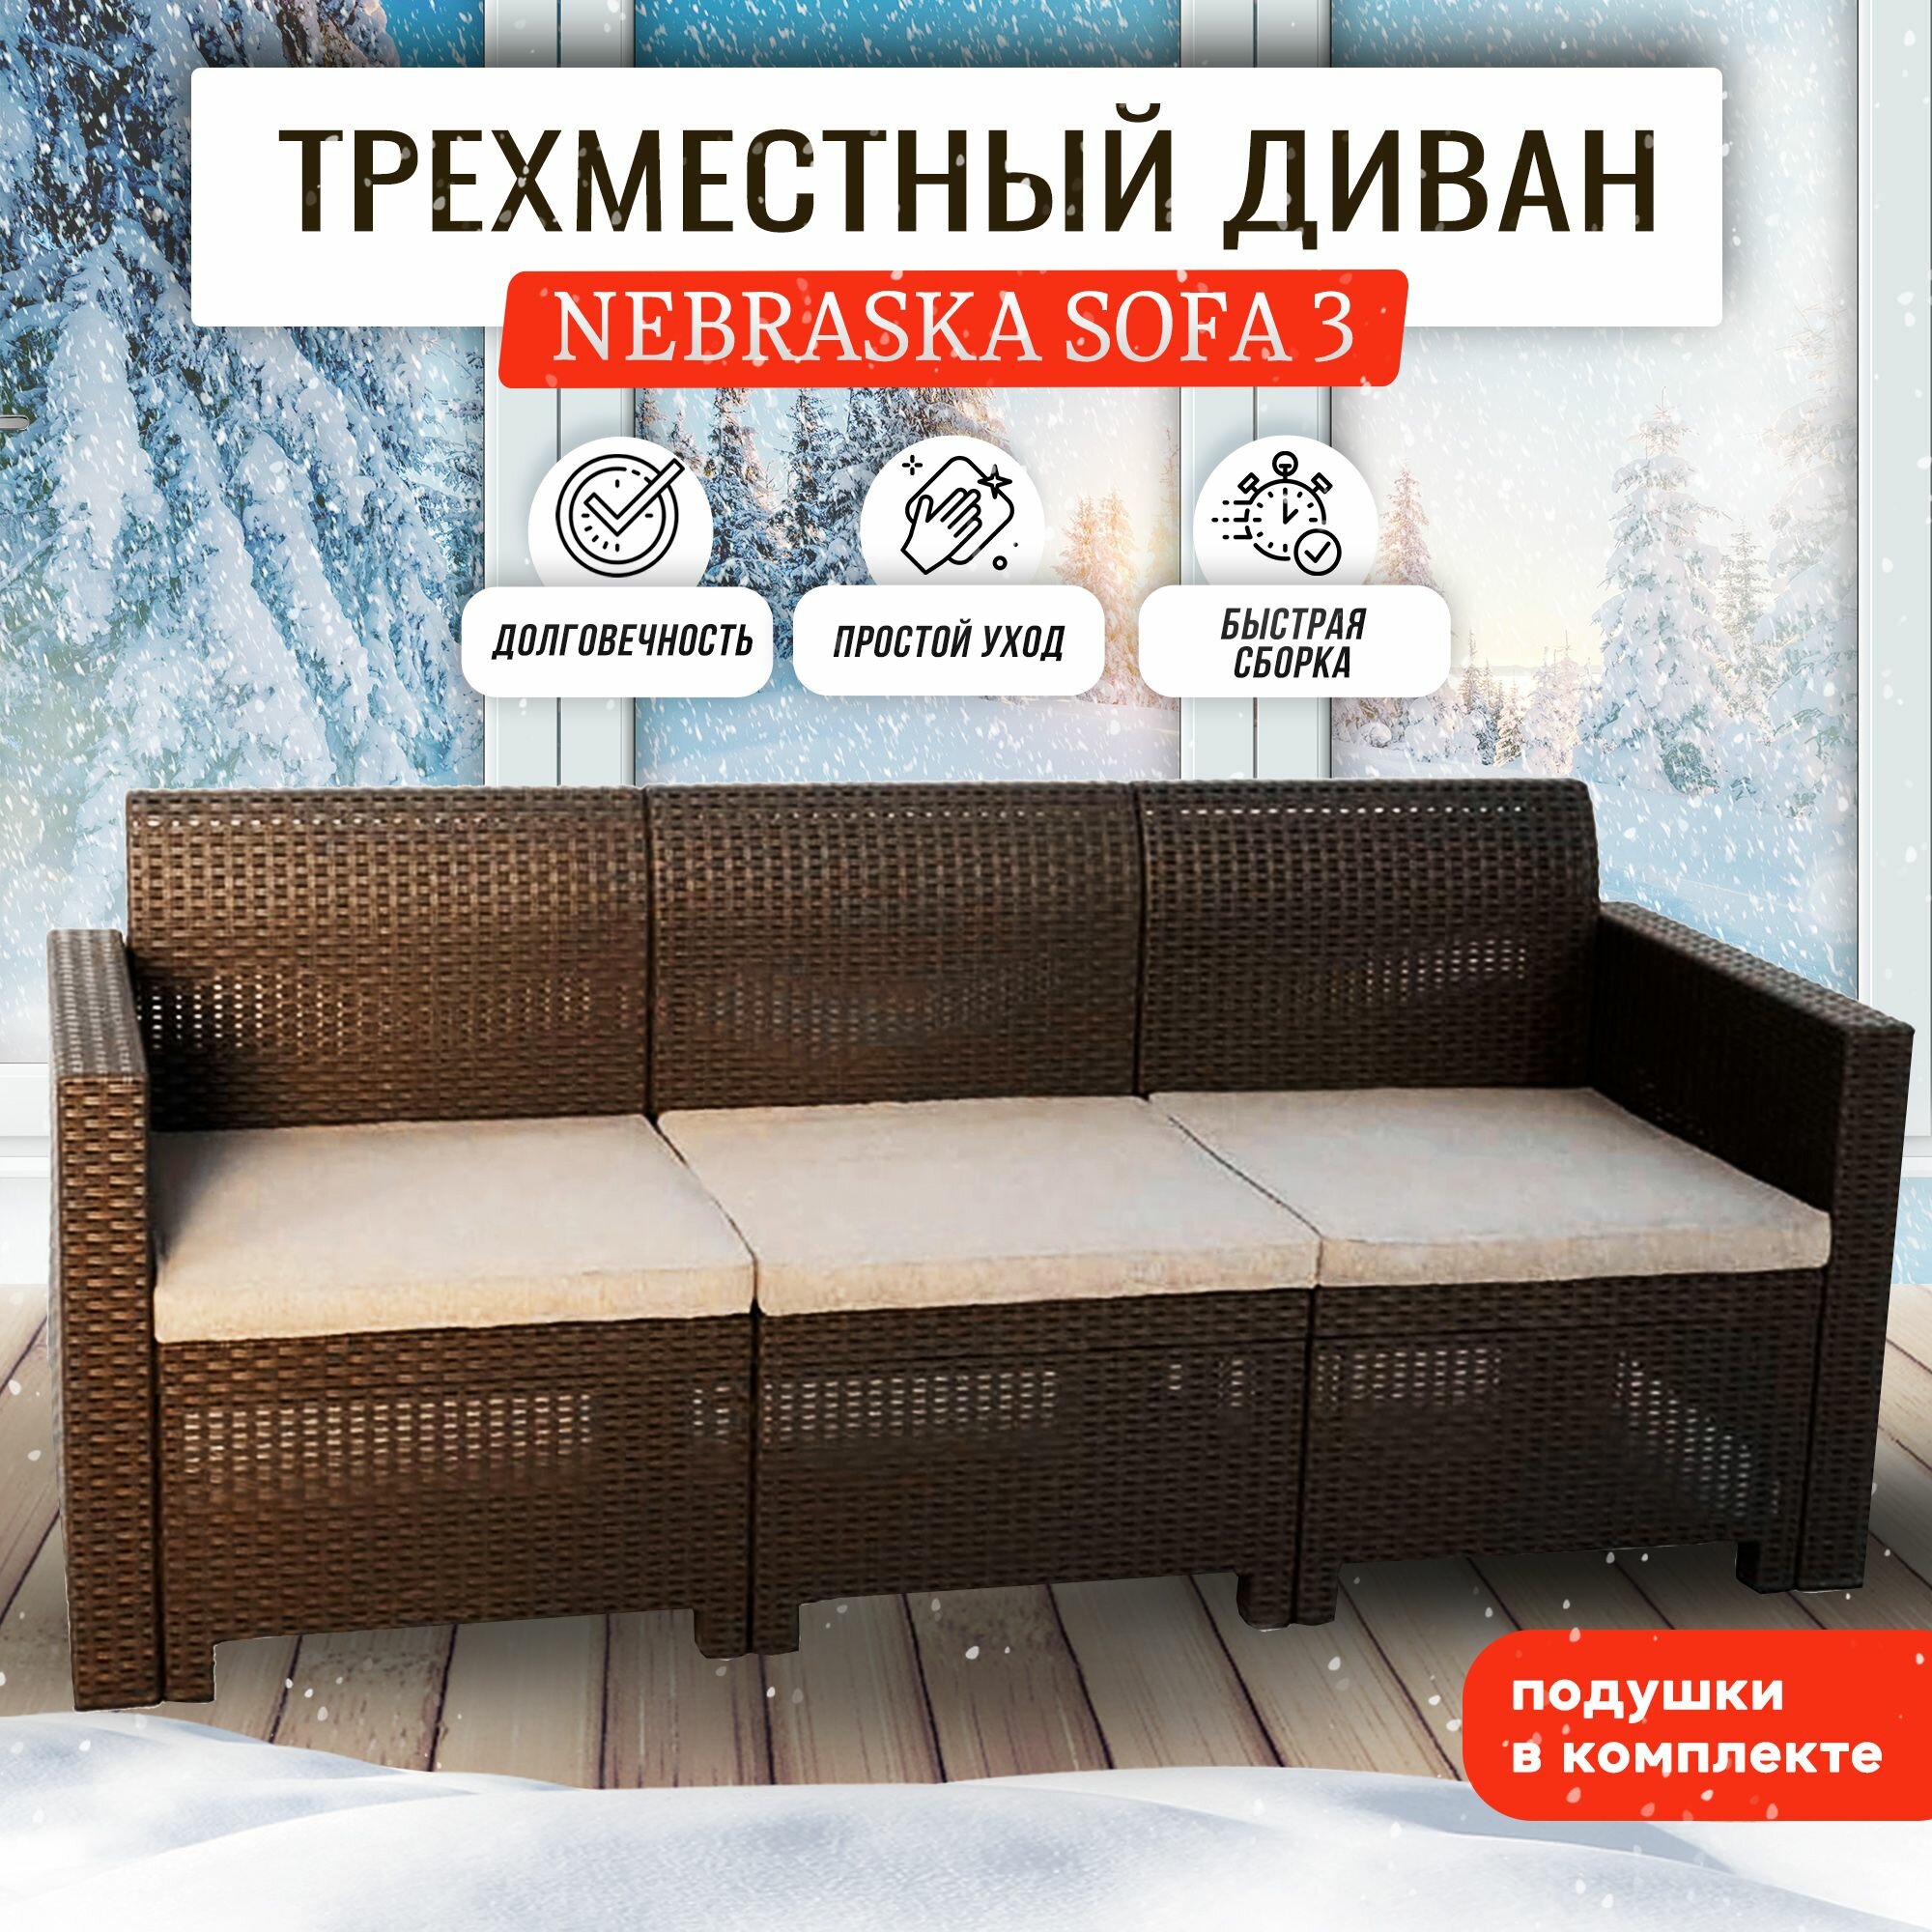 Диван NEBRASKA SOFA 3 (3х местный диван) белый